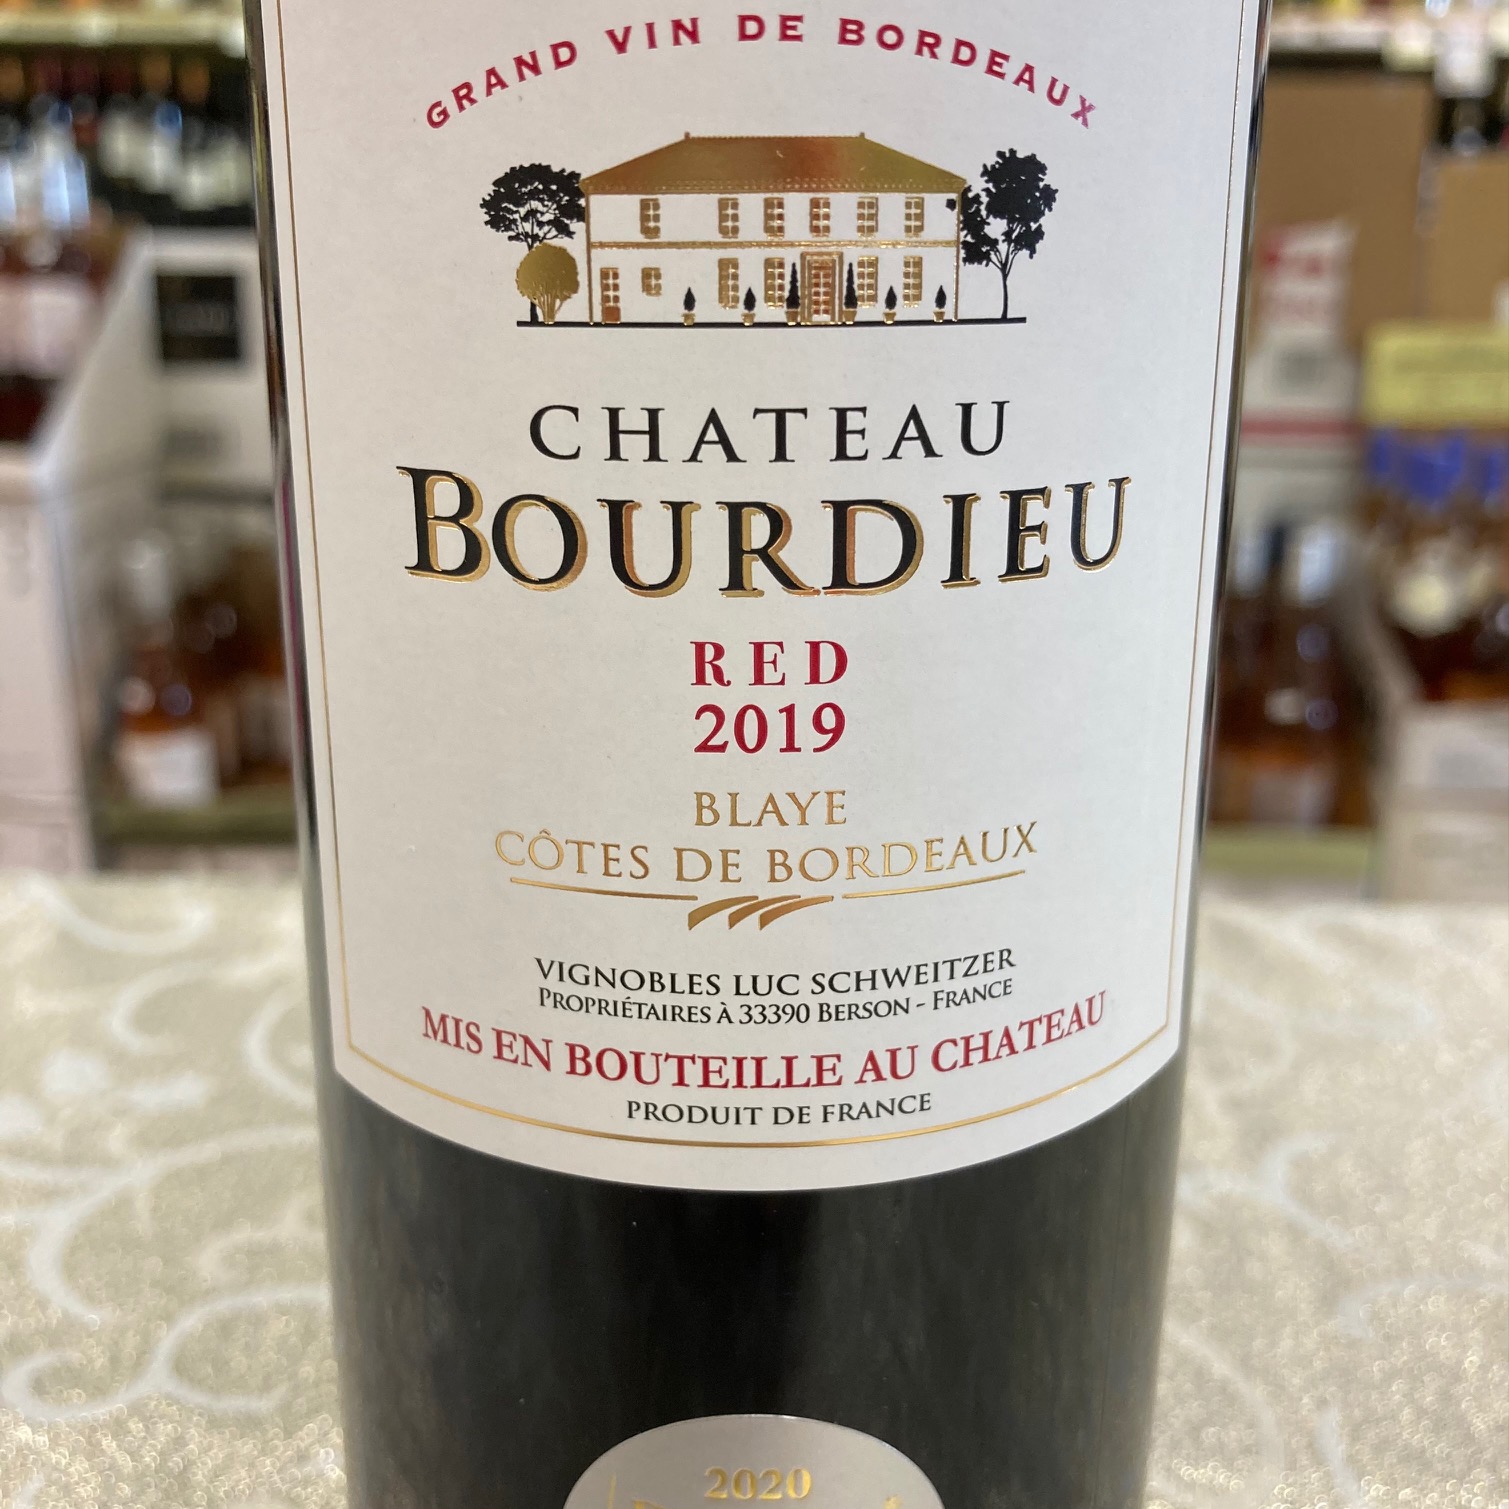 Chateau Bourdieu Blaye Cotes de Bordeaux AOC 2019